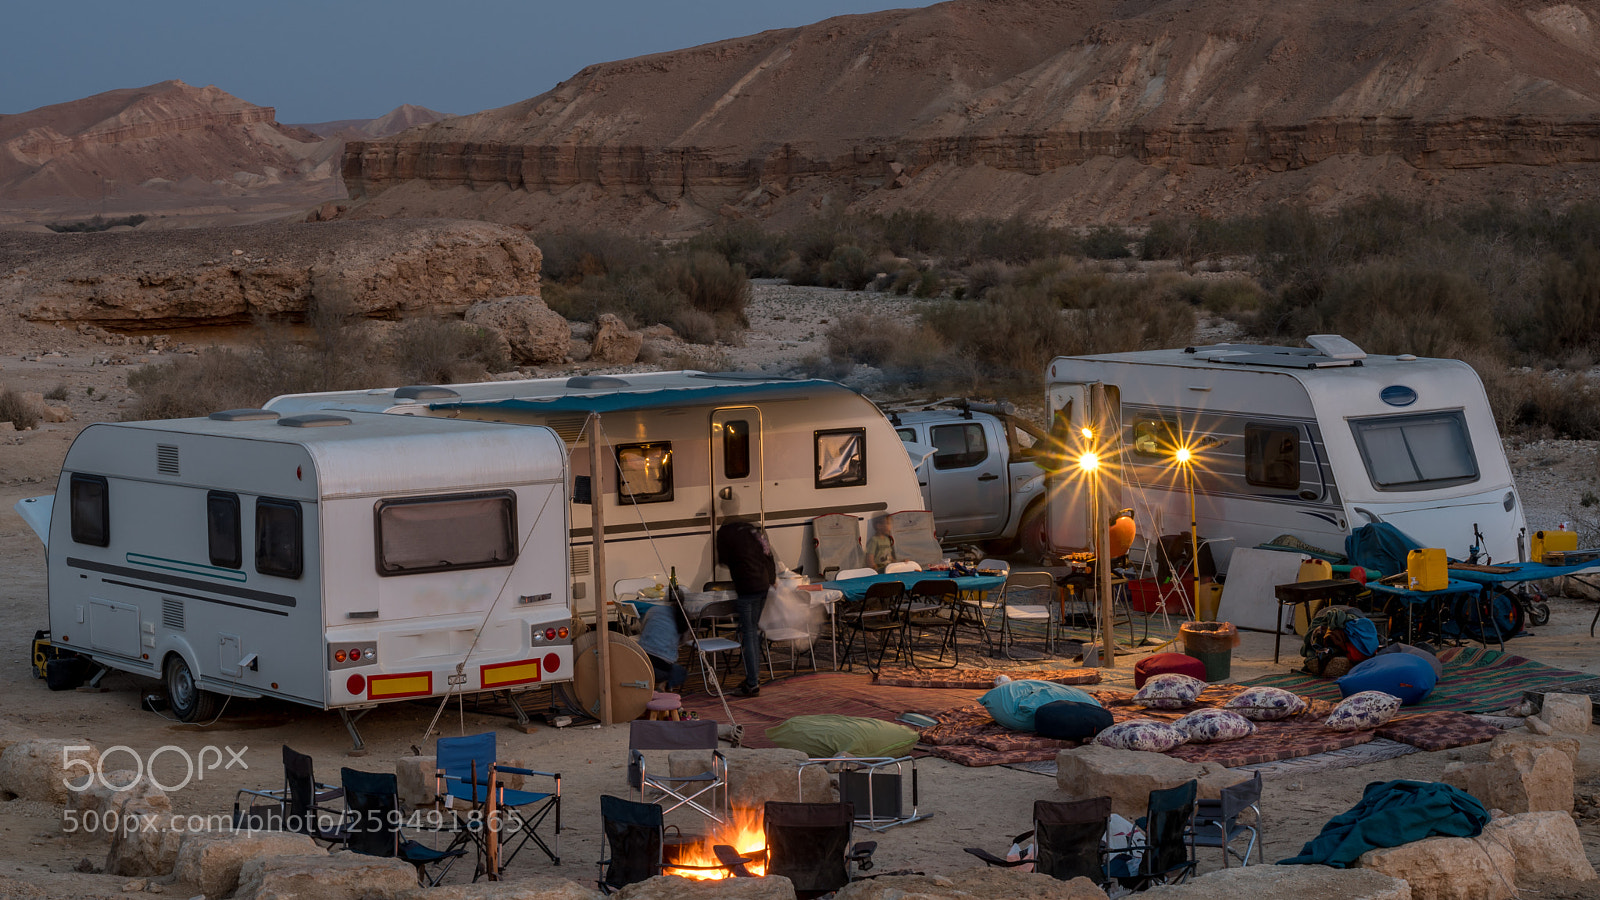 Nikon D500 sample photo. Caravan rv camping vacation photography